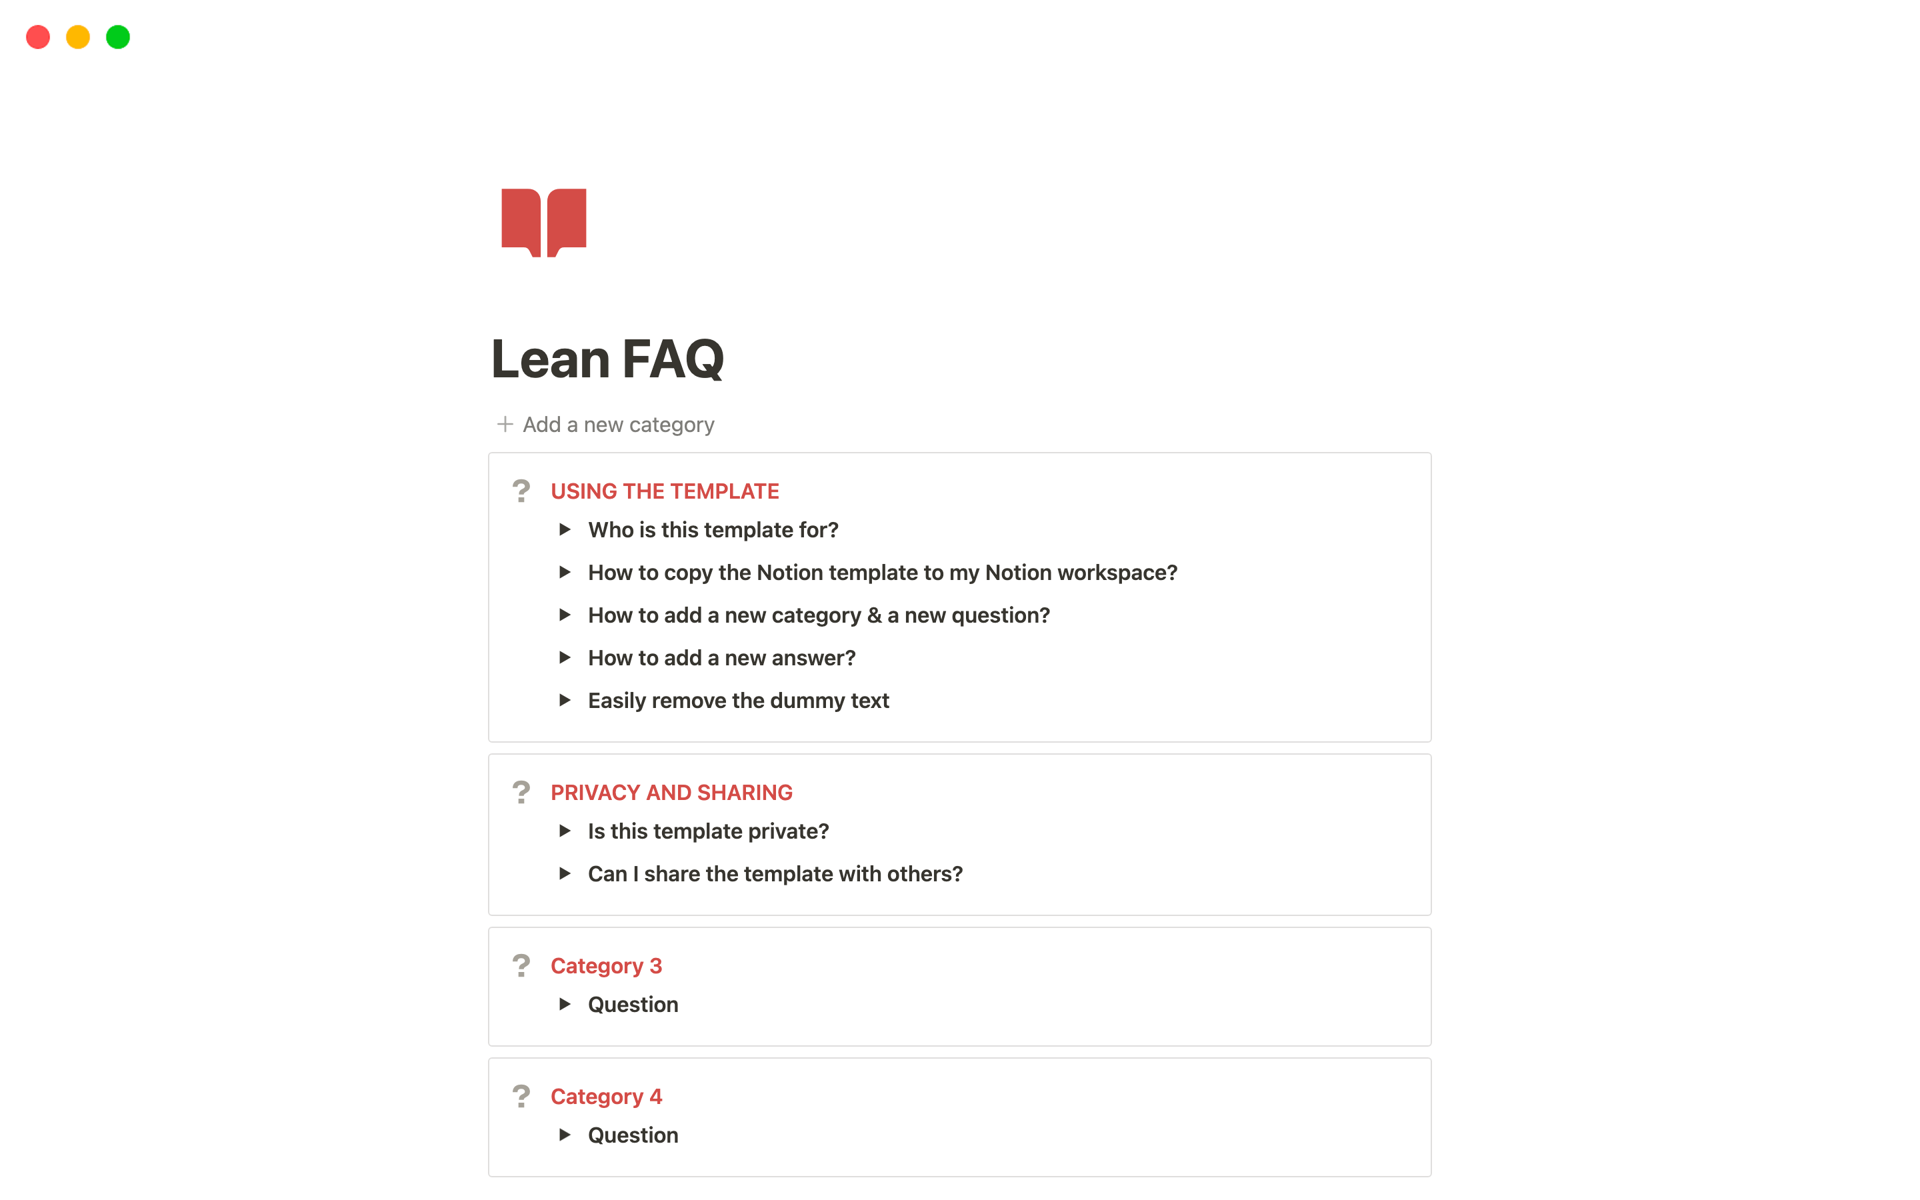 Lean FAQ 님의 템플릿 미리보기